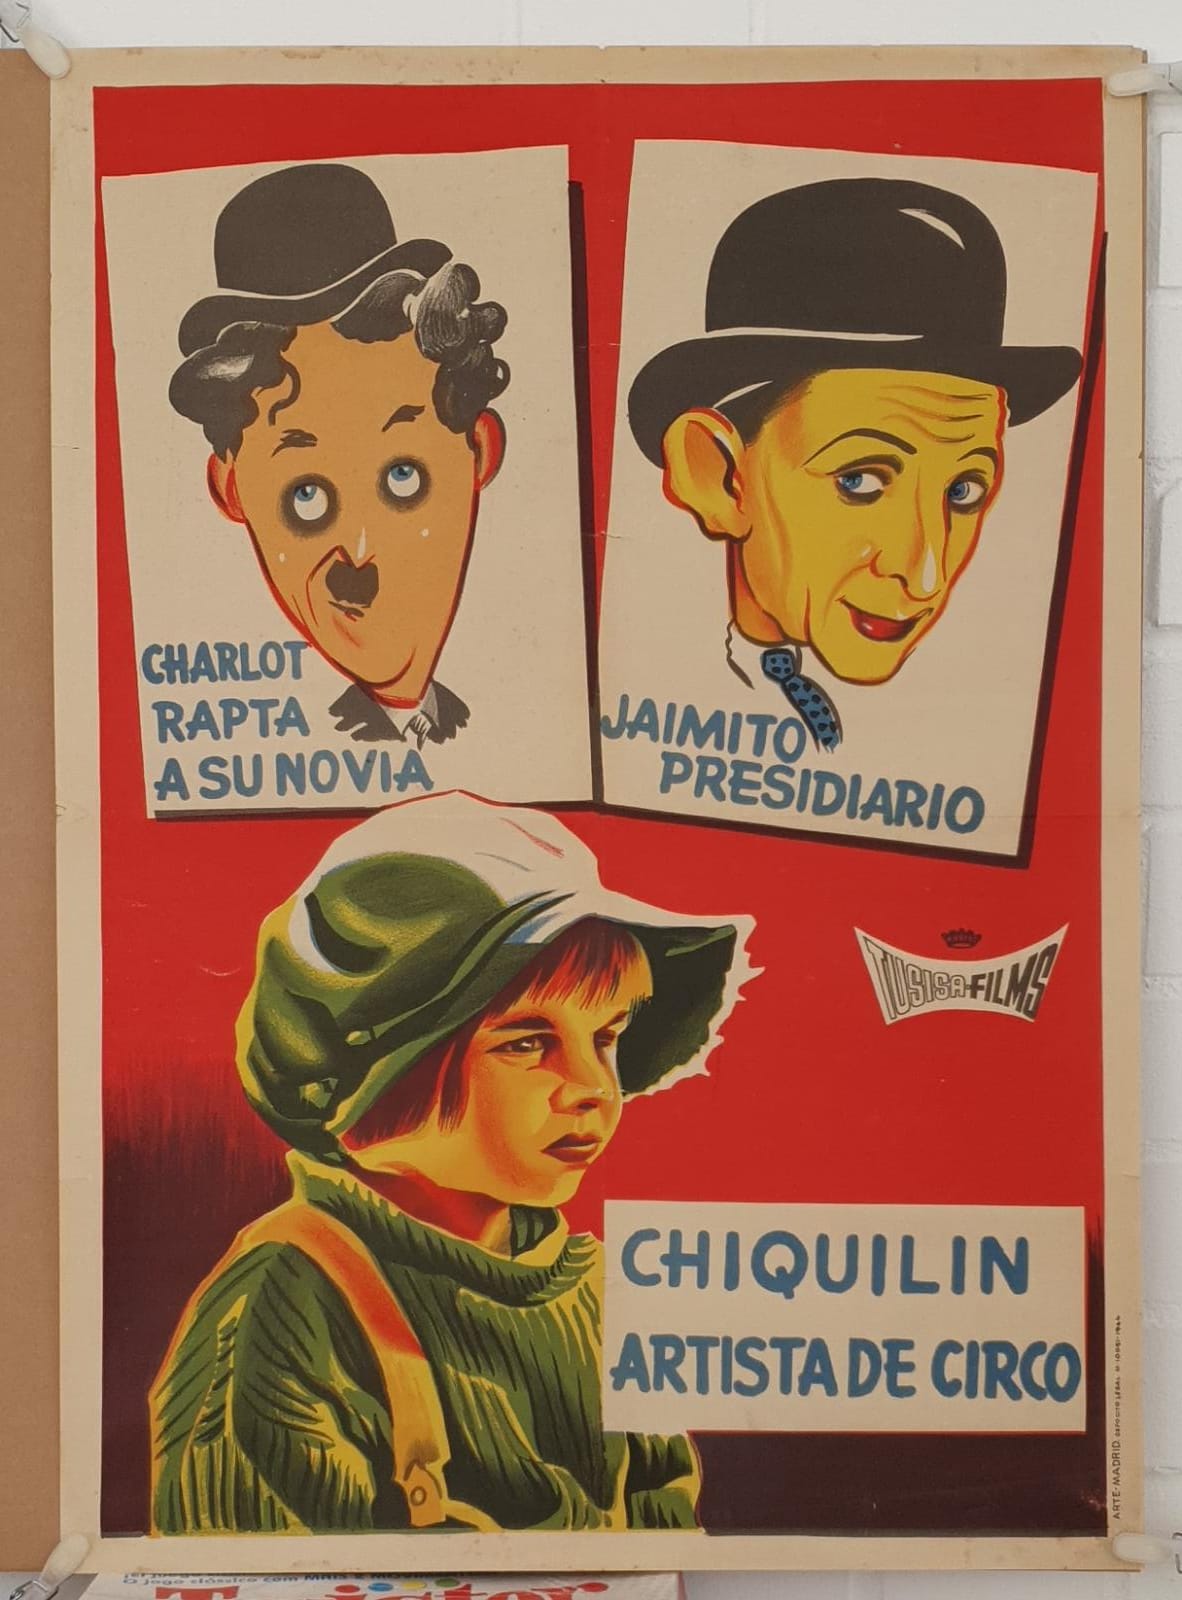 Charlot rapta a su novia. Jaimito presidiario. Chiquilín Artista de Circo. Cartel (7x50) Año 1964